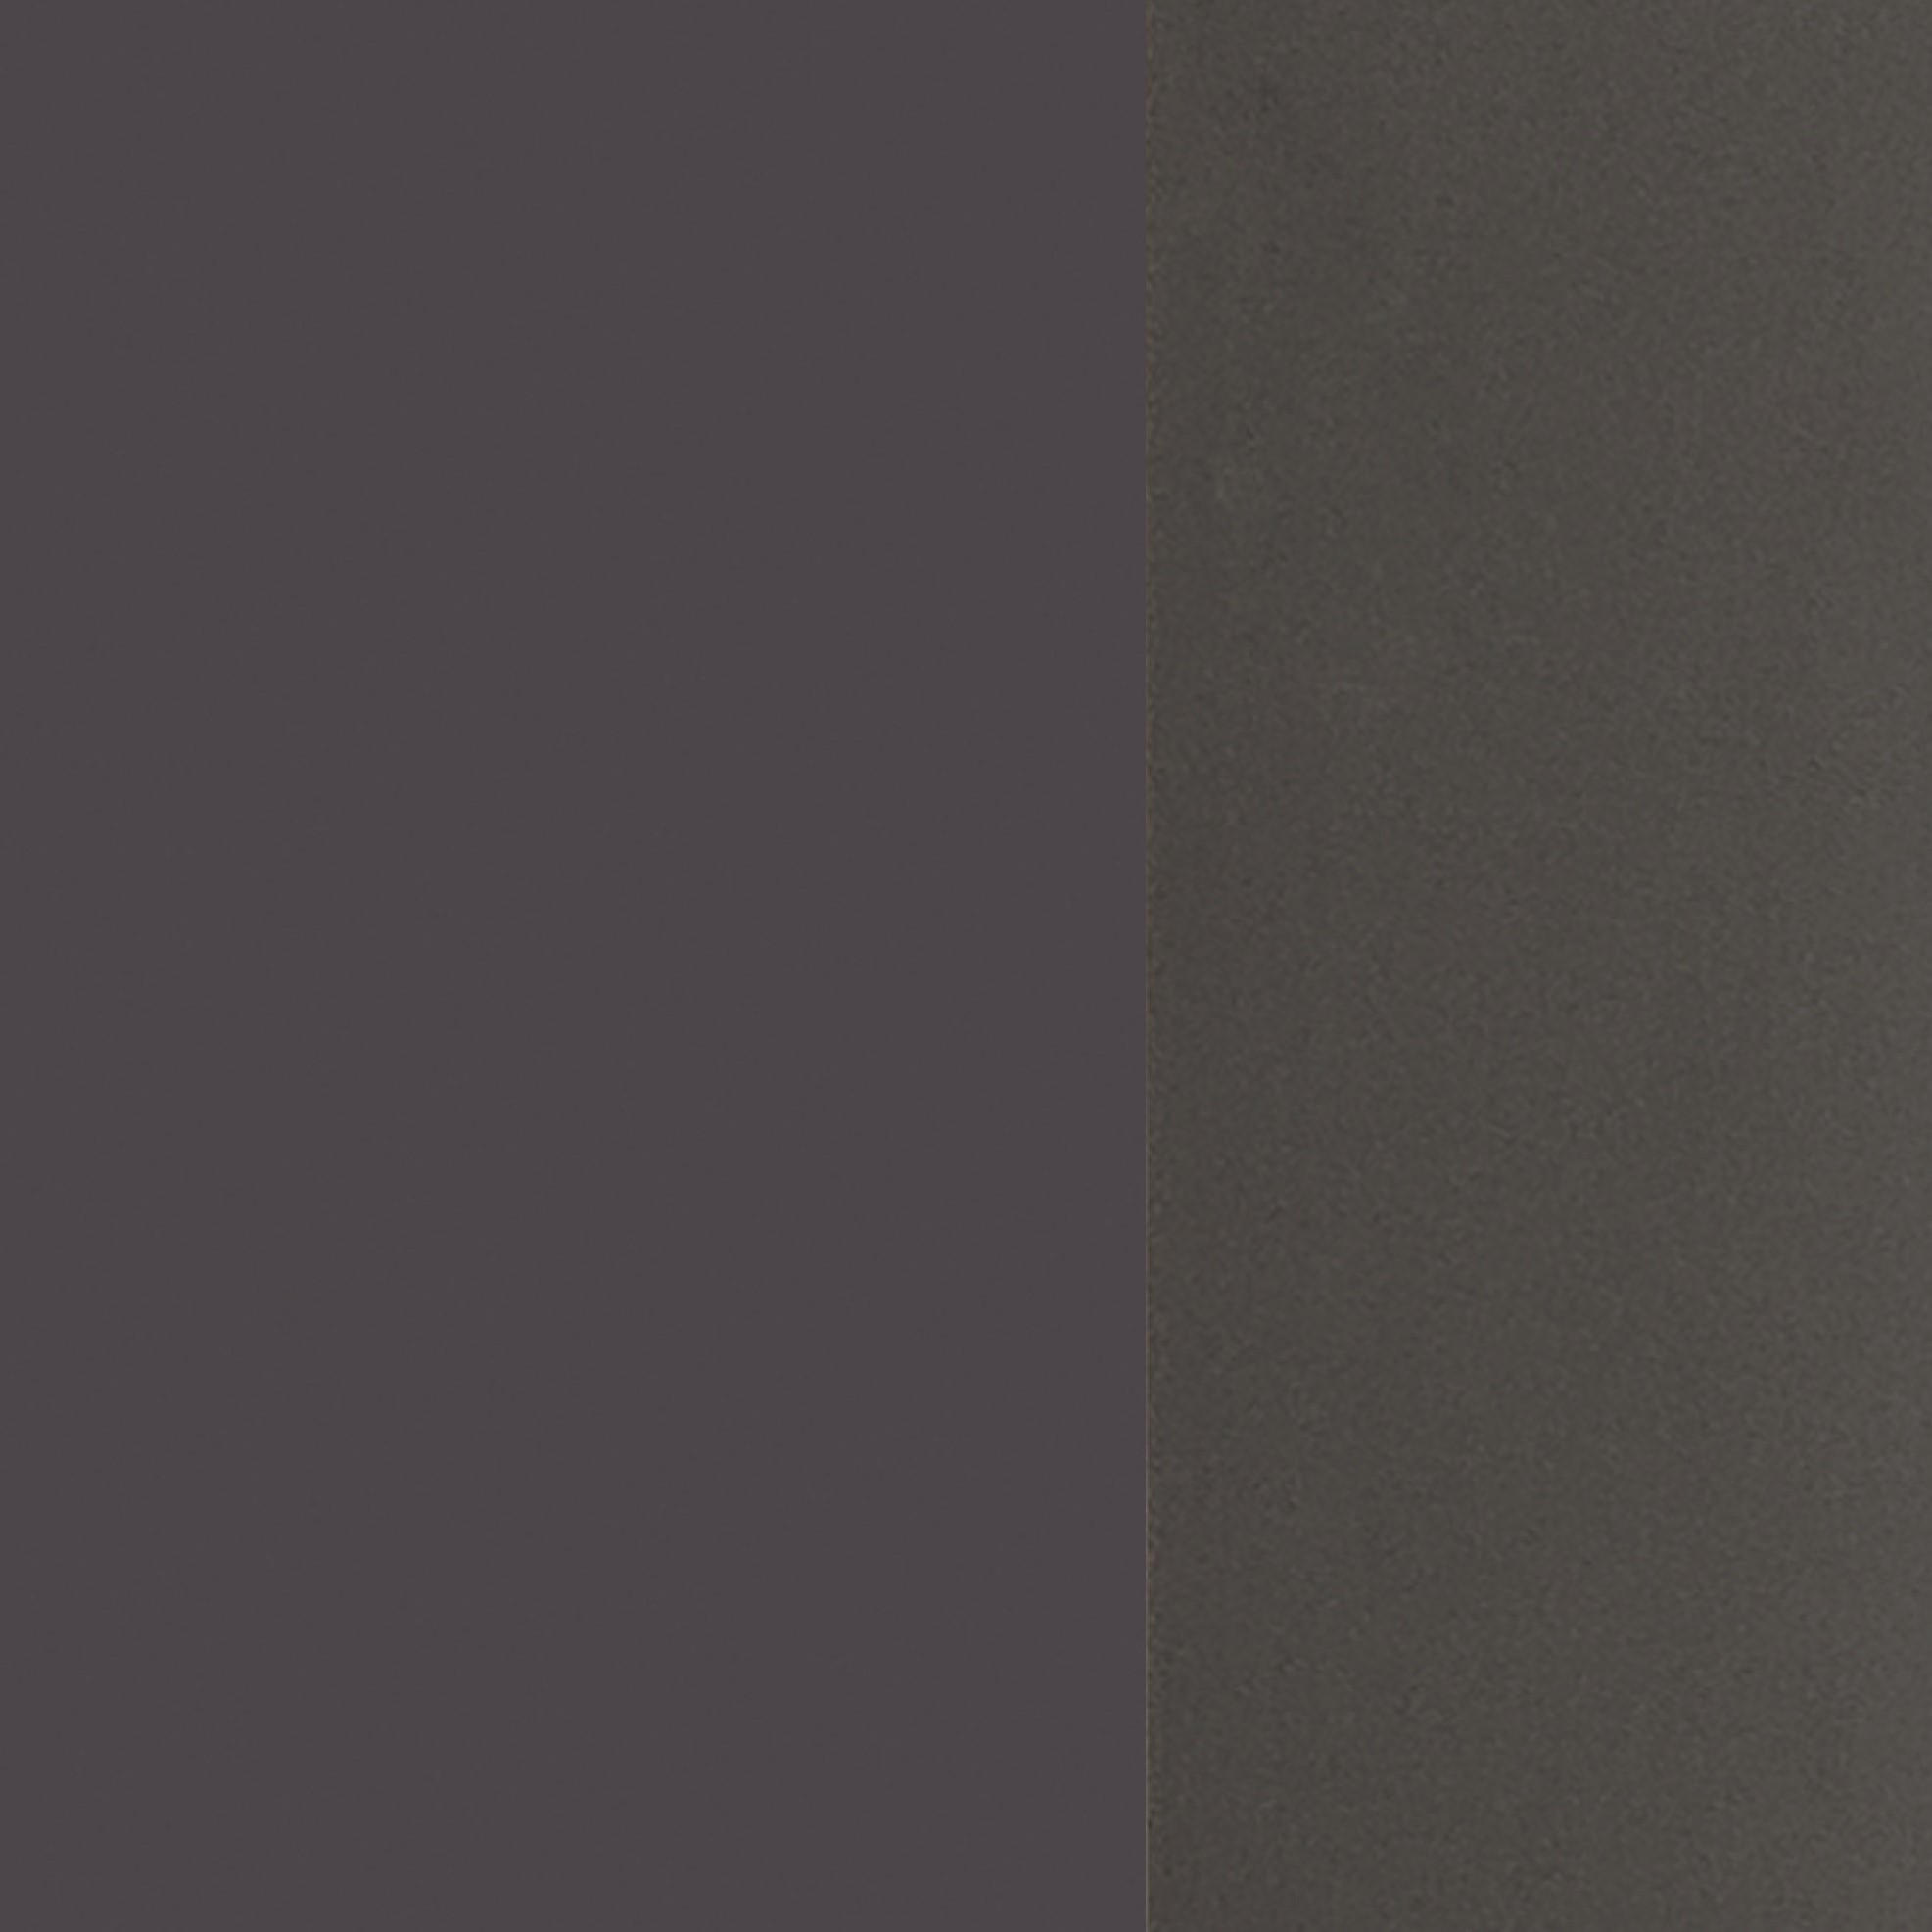 SPIEGELSCHRANK 120/64/20 cm  - Graphitfarben, Natur, Holzwerkstoff (120/64/20cm) - Xora